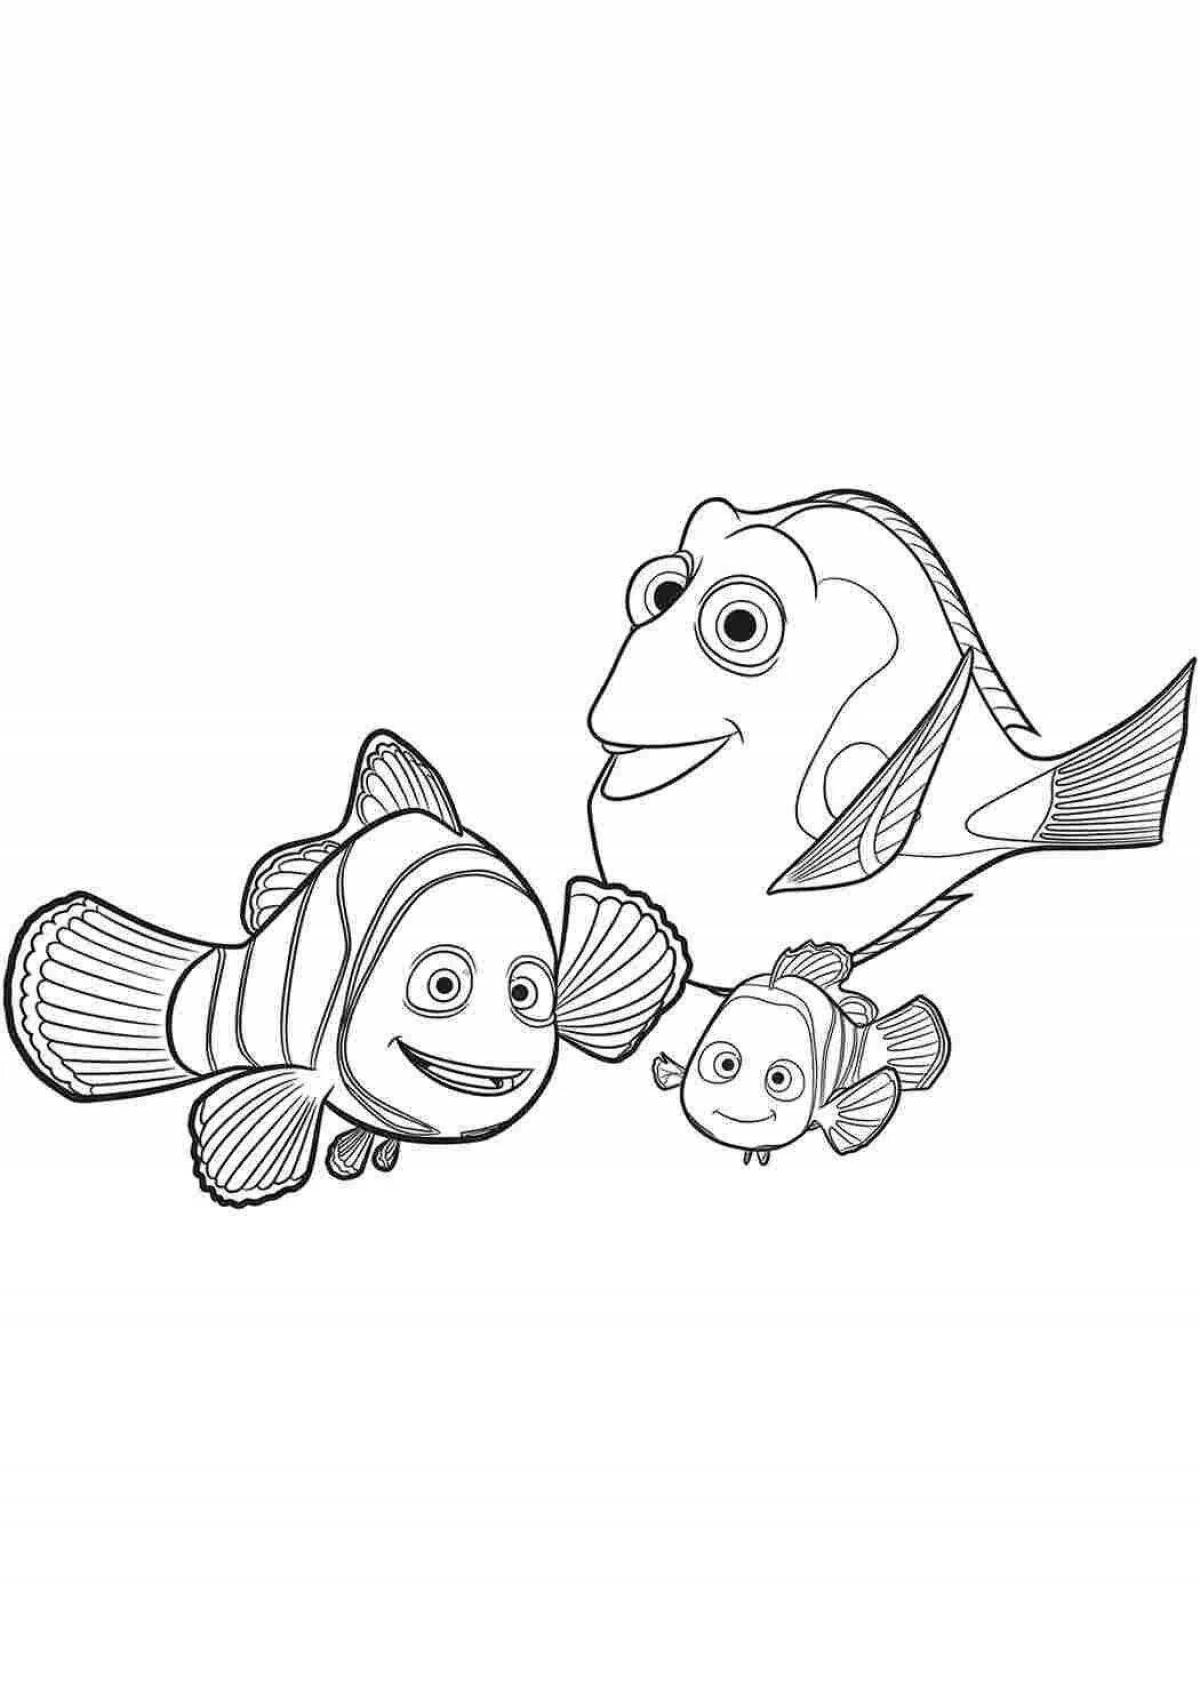 Nemo and dory #5